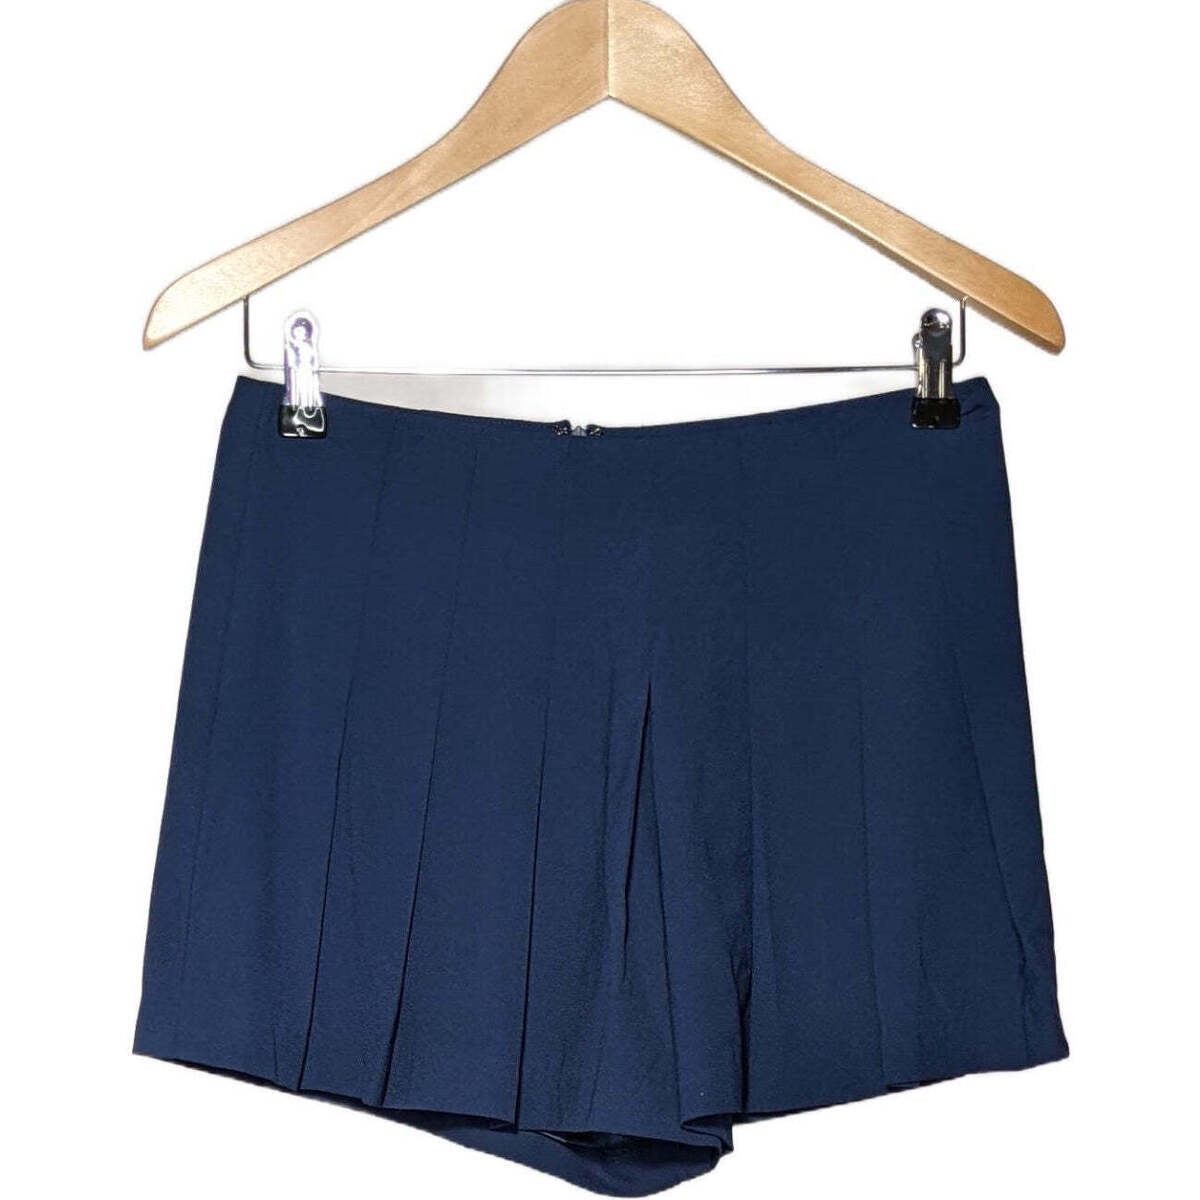 Vêtements Femme Womens Blue Ruched Maxi Dress short  34 - T0 - XS Bleu Bleu